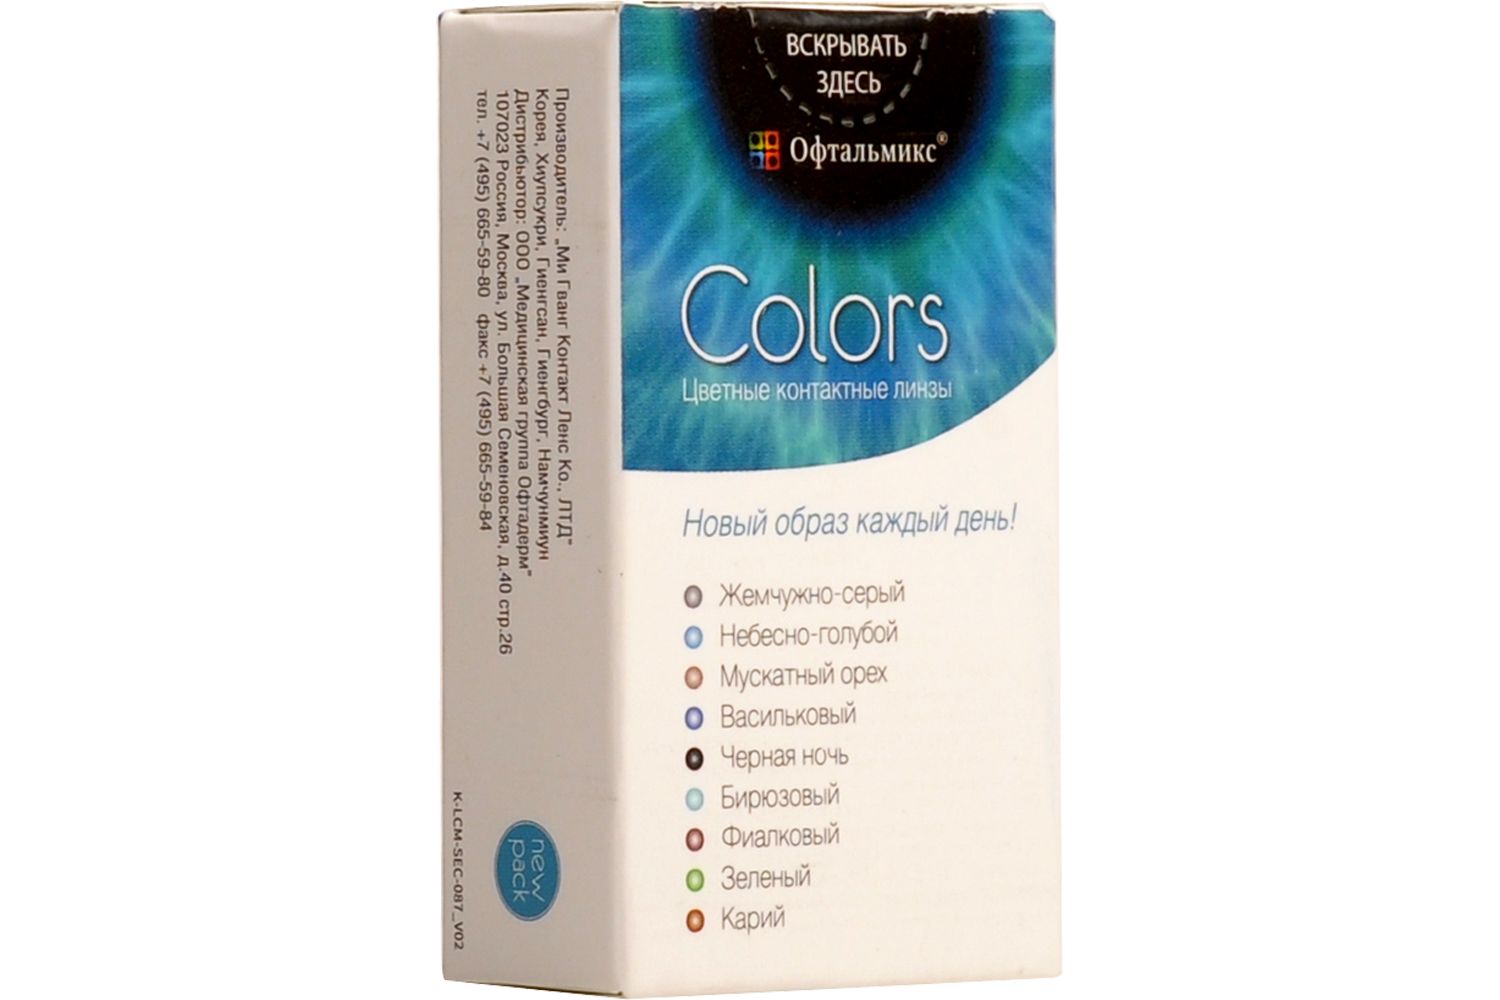 Купить Colors 2 линзы, Цветные контактные линзы Офтальмикс Colors, 2 шт. PWR -4, 00, R 8.6, Cloud